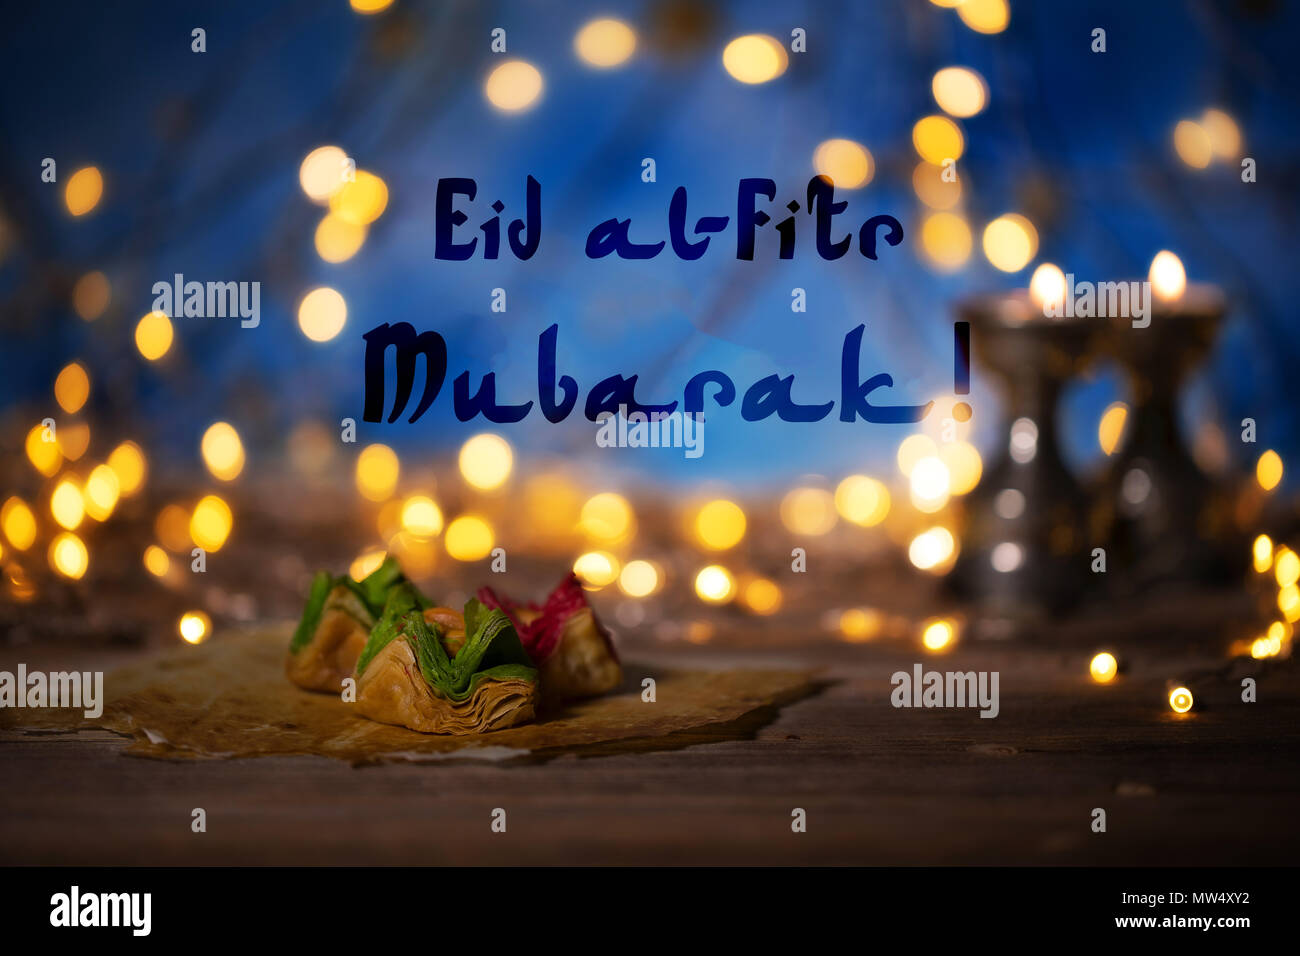 Gratulation: Eid Mubarak! Arabische Süßigkeiten auf einer